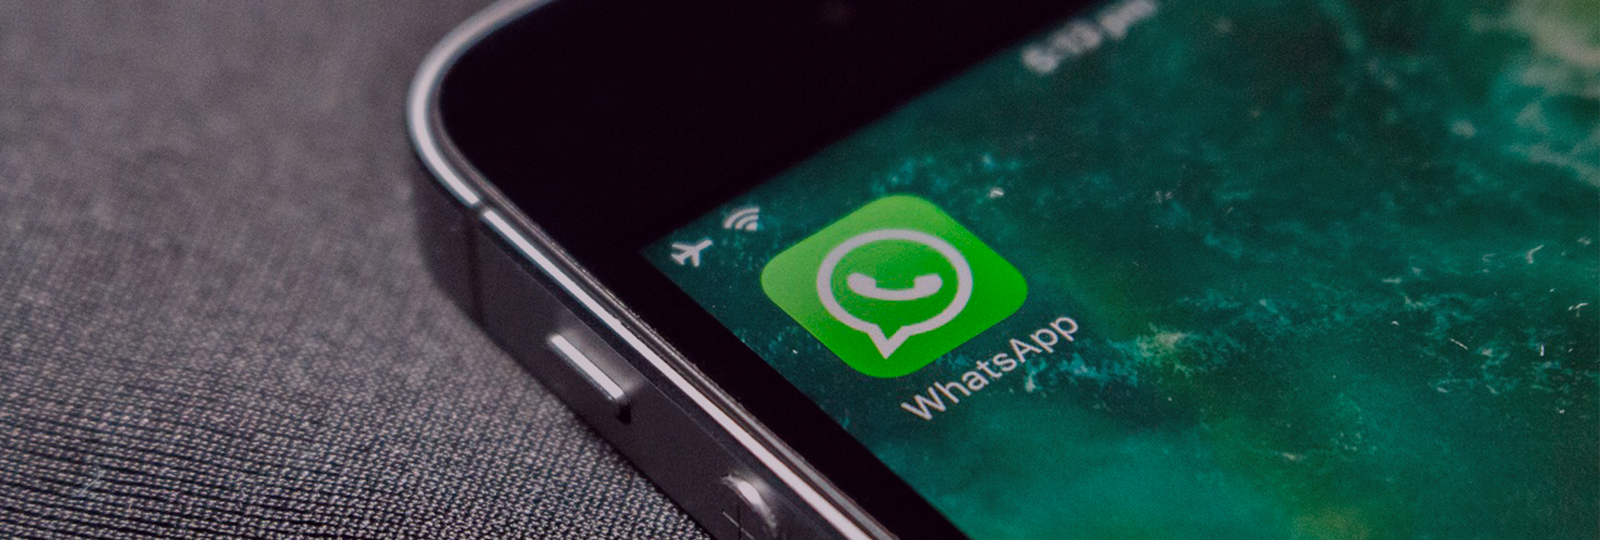 Protege tu WhatsApp: cómo evitar la estafa de los 6 dígitos